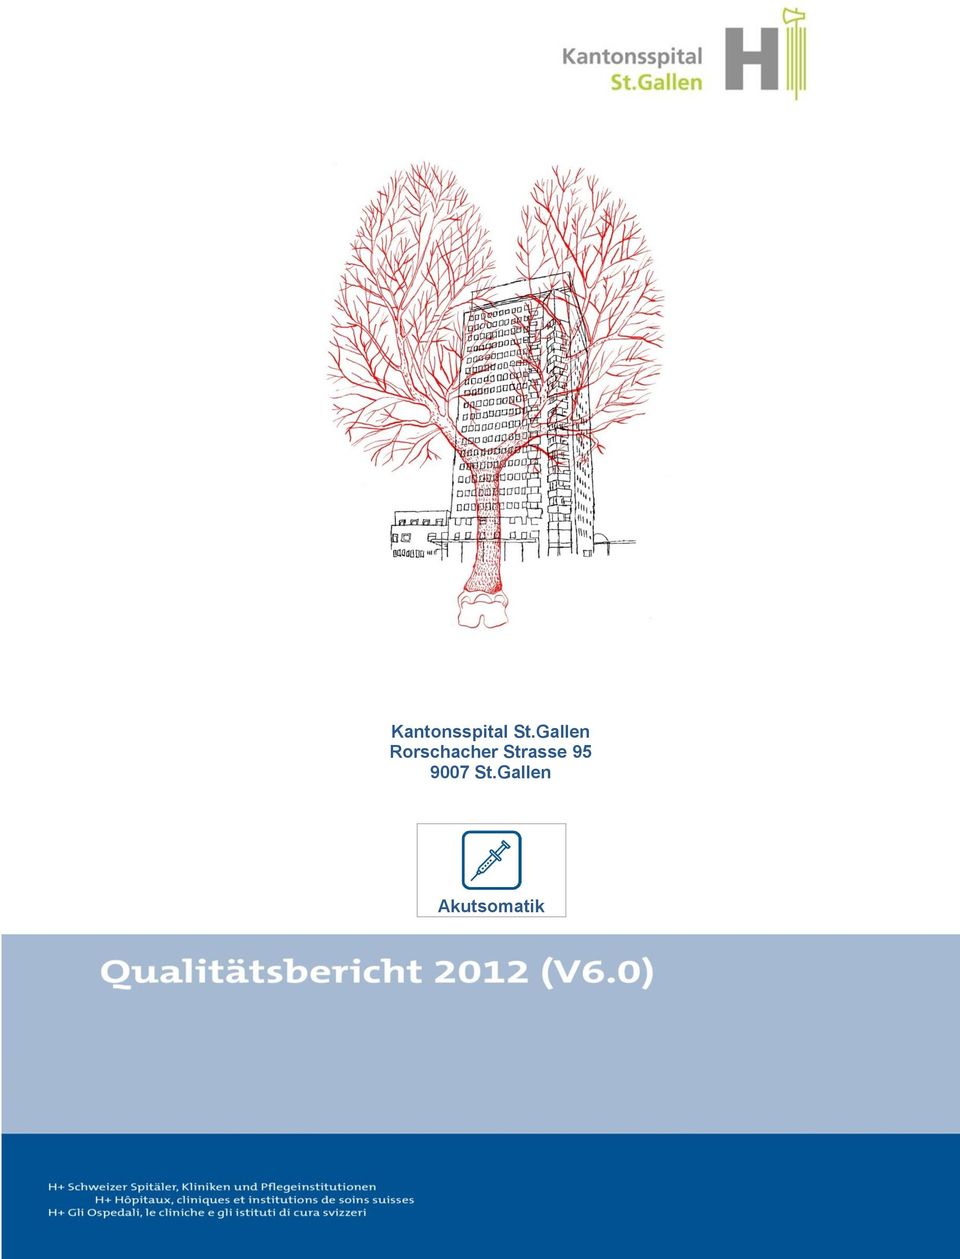 Qualitätsbericht 2012 V 6.